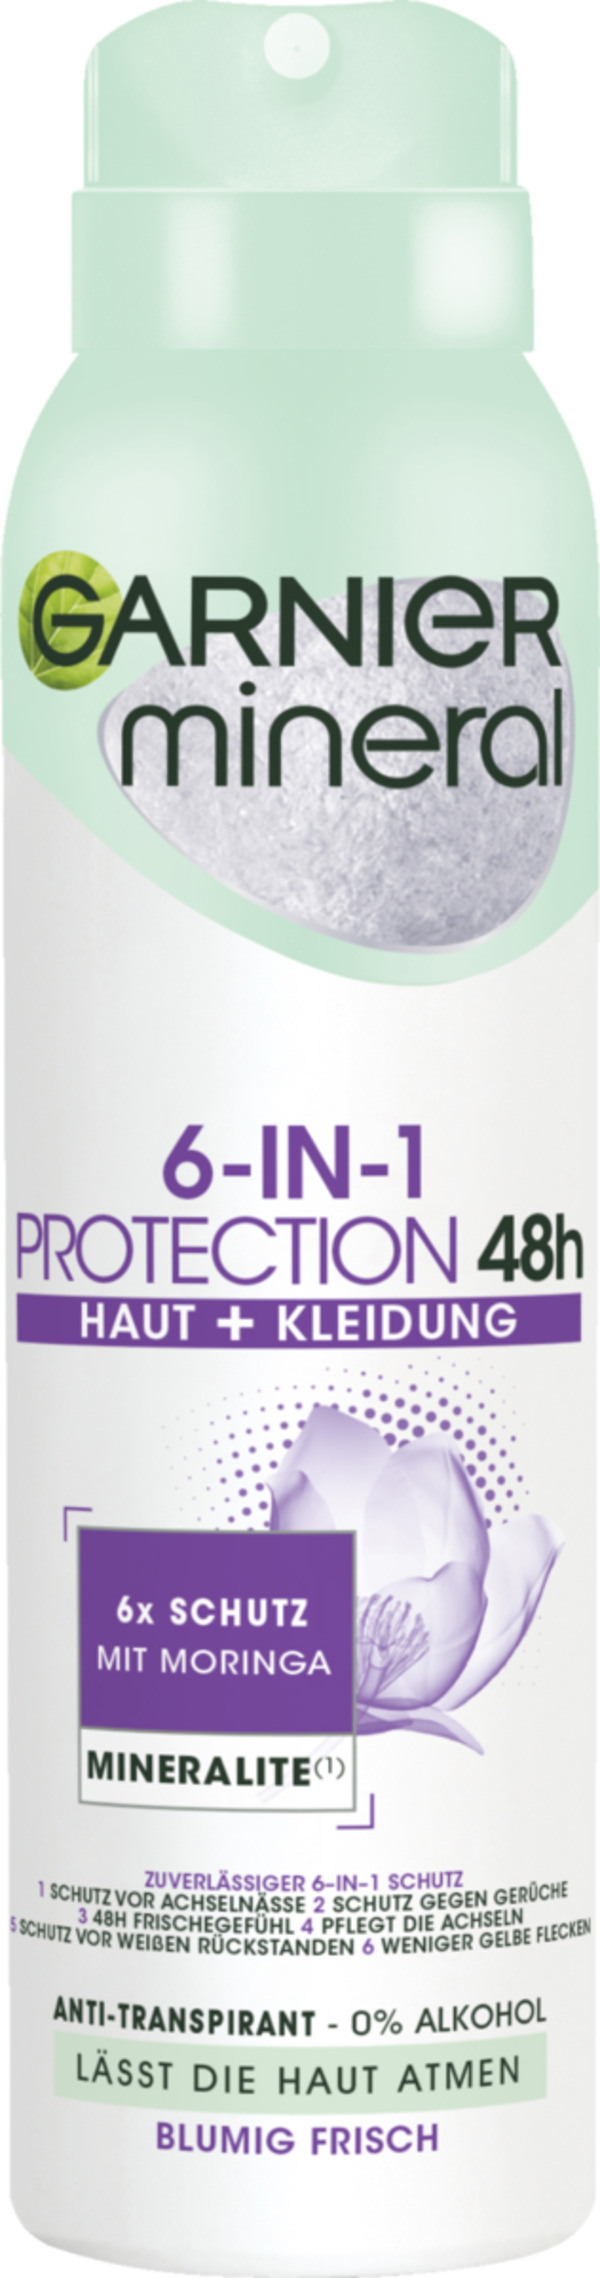 Bild 1 von Garnier Mineral Anti-Transpirant Spray Protection 5 1.19 EUR/100 ml